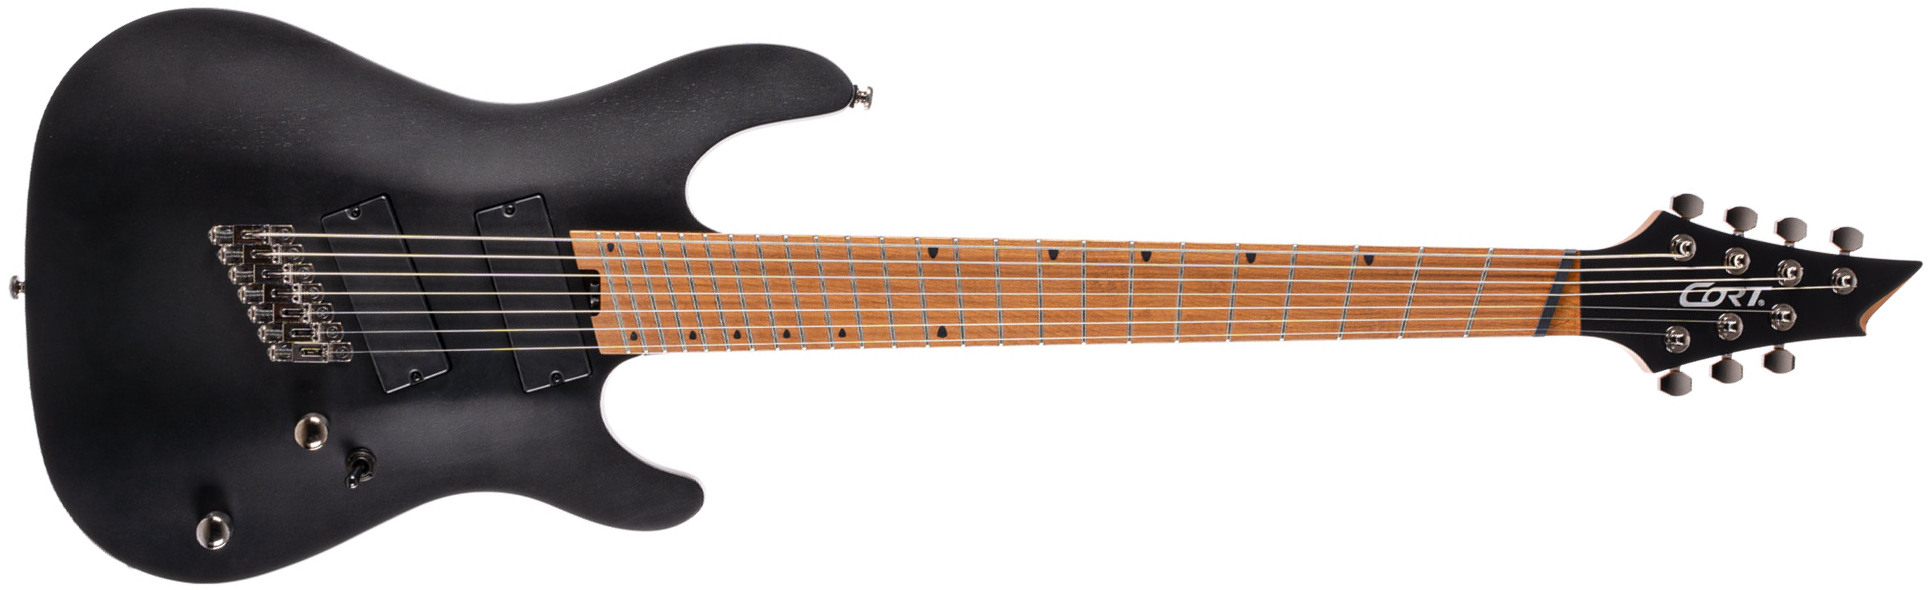 Cort Kx307 Multiscale 7c Ht Mn - Open Pore Black - Multi-scale gitaar - Main picture